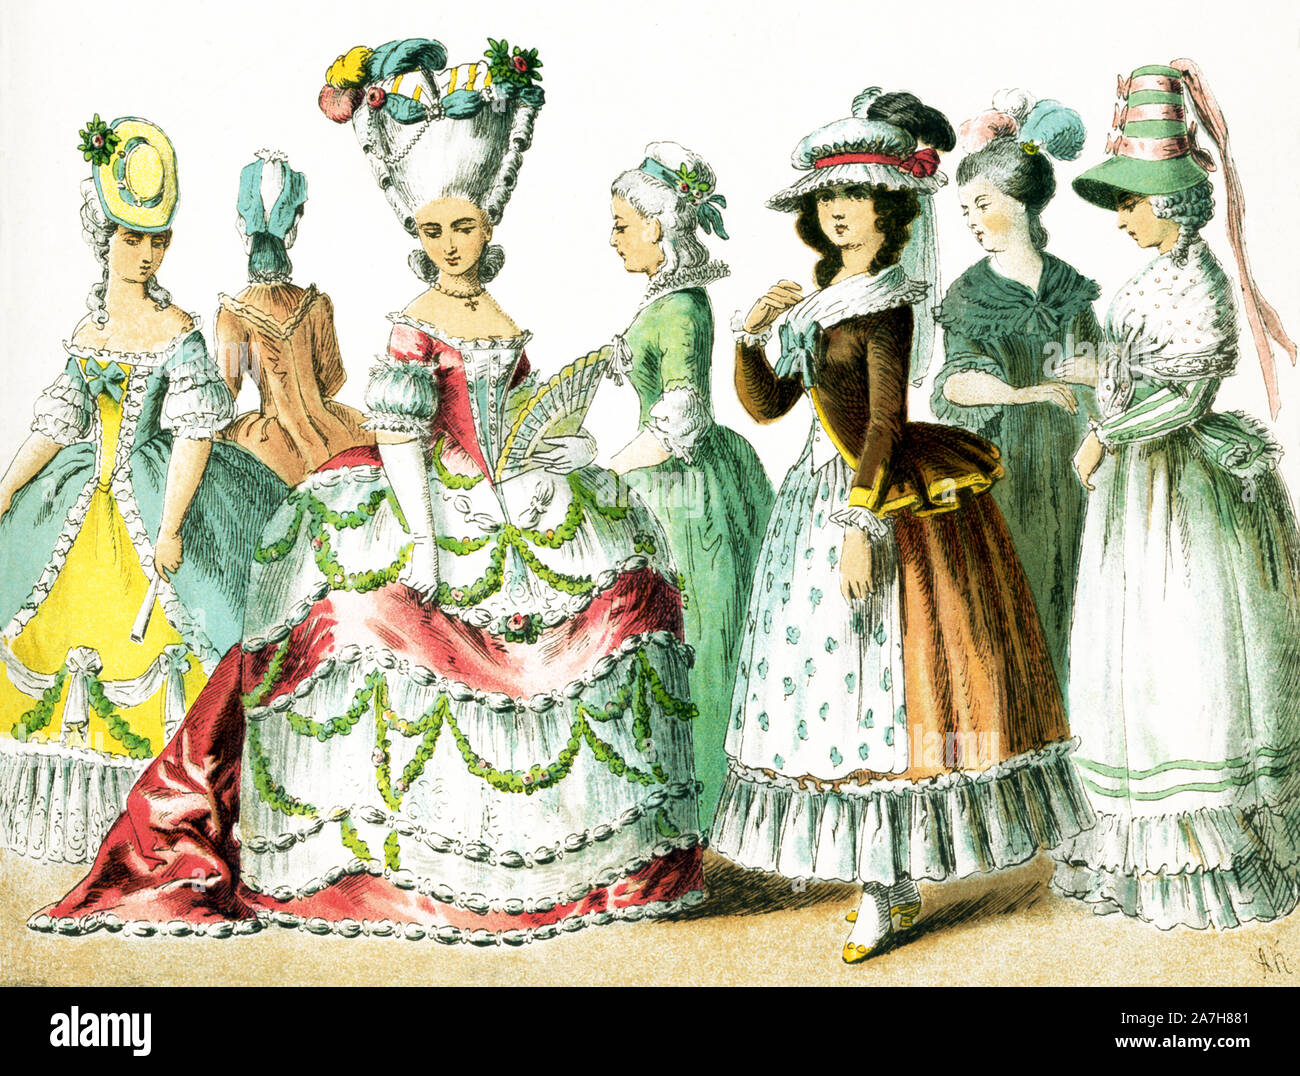 Qui vengono mostrate le donne francesi tra il 1750 e il 1800.Essi sono da sinistra a destra: quattro dame di rango, due signore nel 1785, e una signora in 1790.Questa illustrazione risale al 1882. Foto Stock